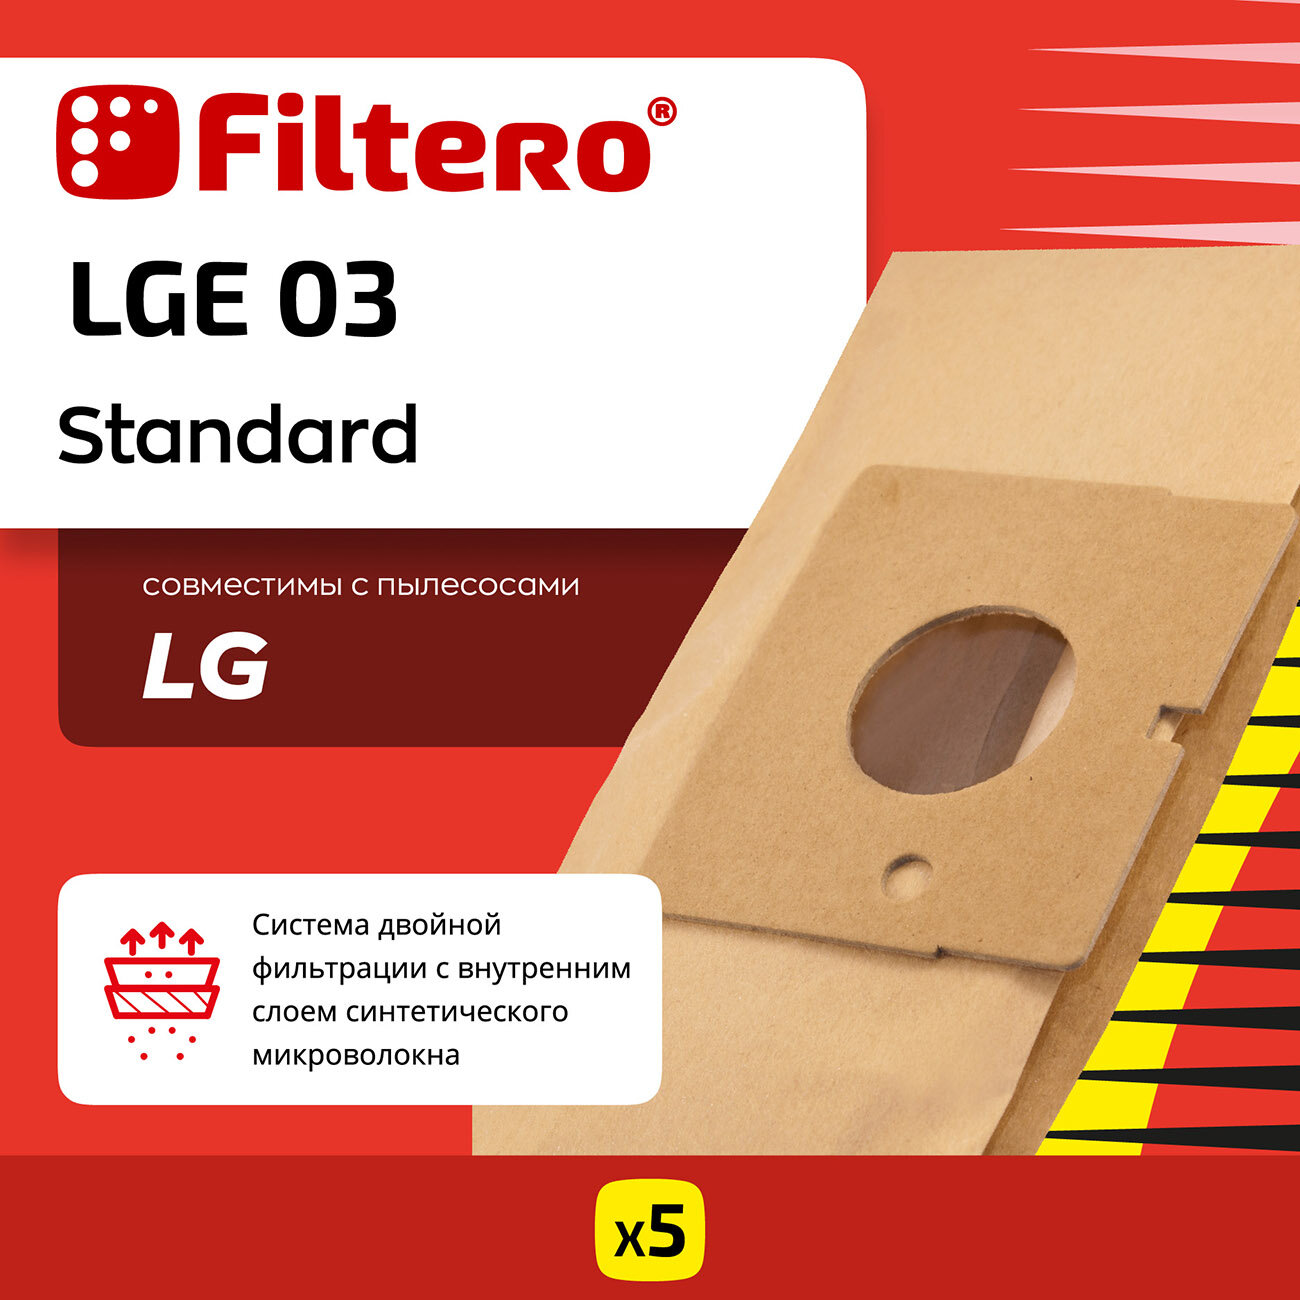 Мешки-пылесборники Filtero LGE 03 Standard для пылесосов LG, бумажные, 5 шт.